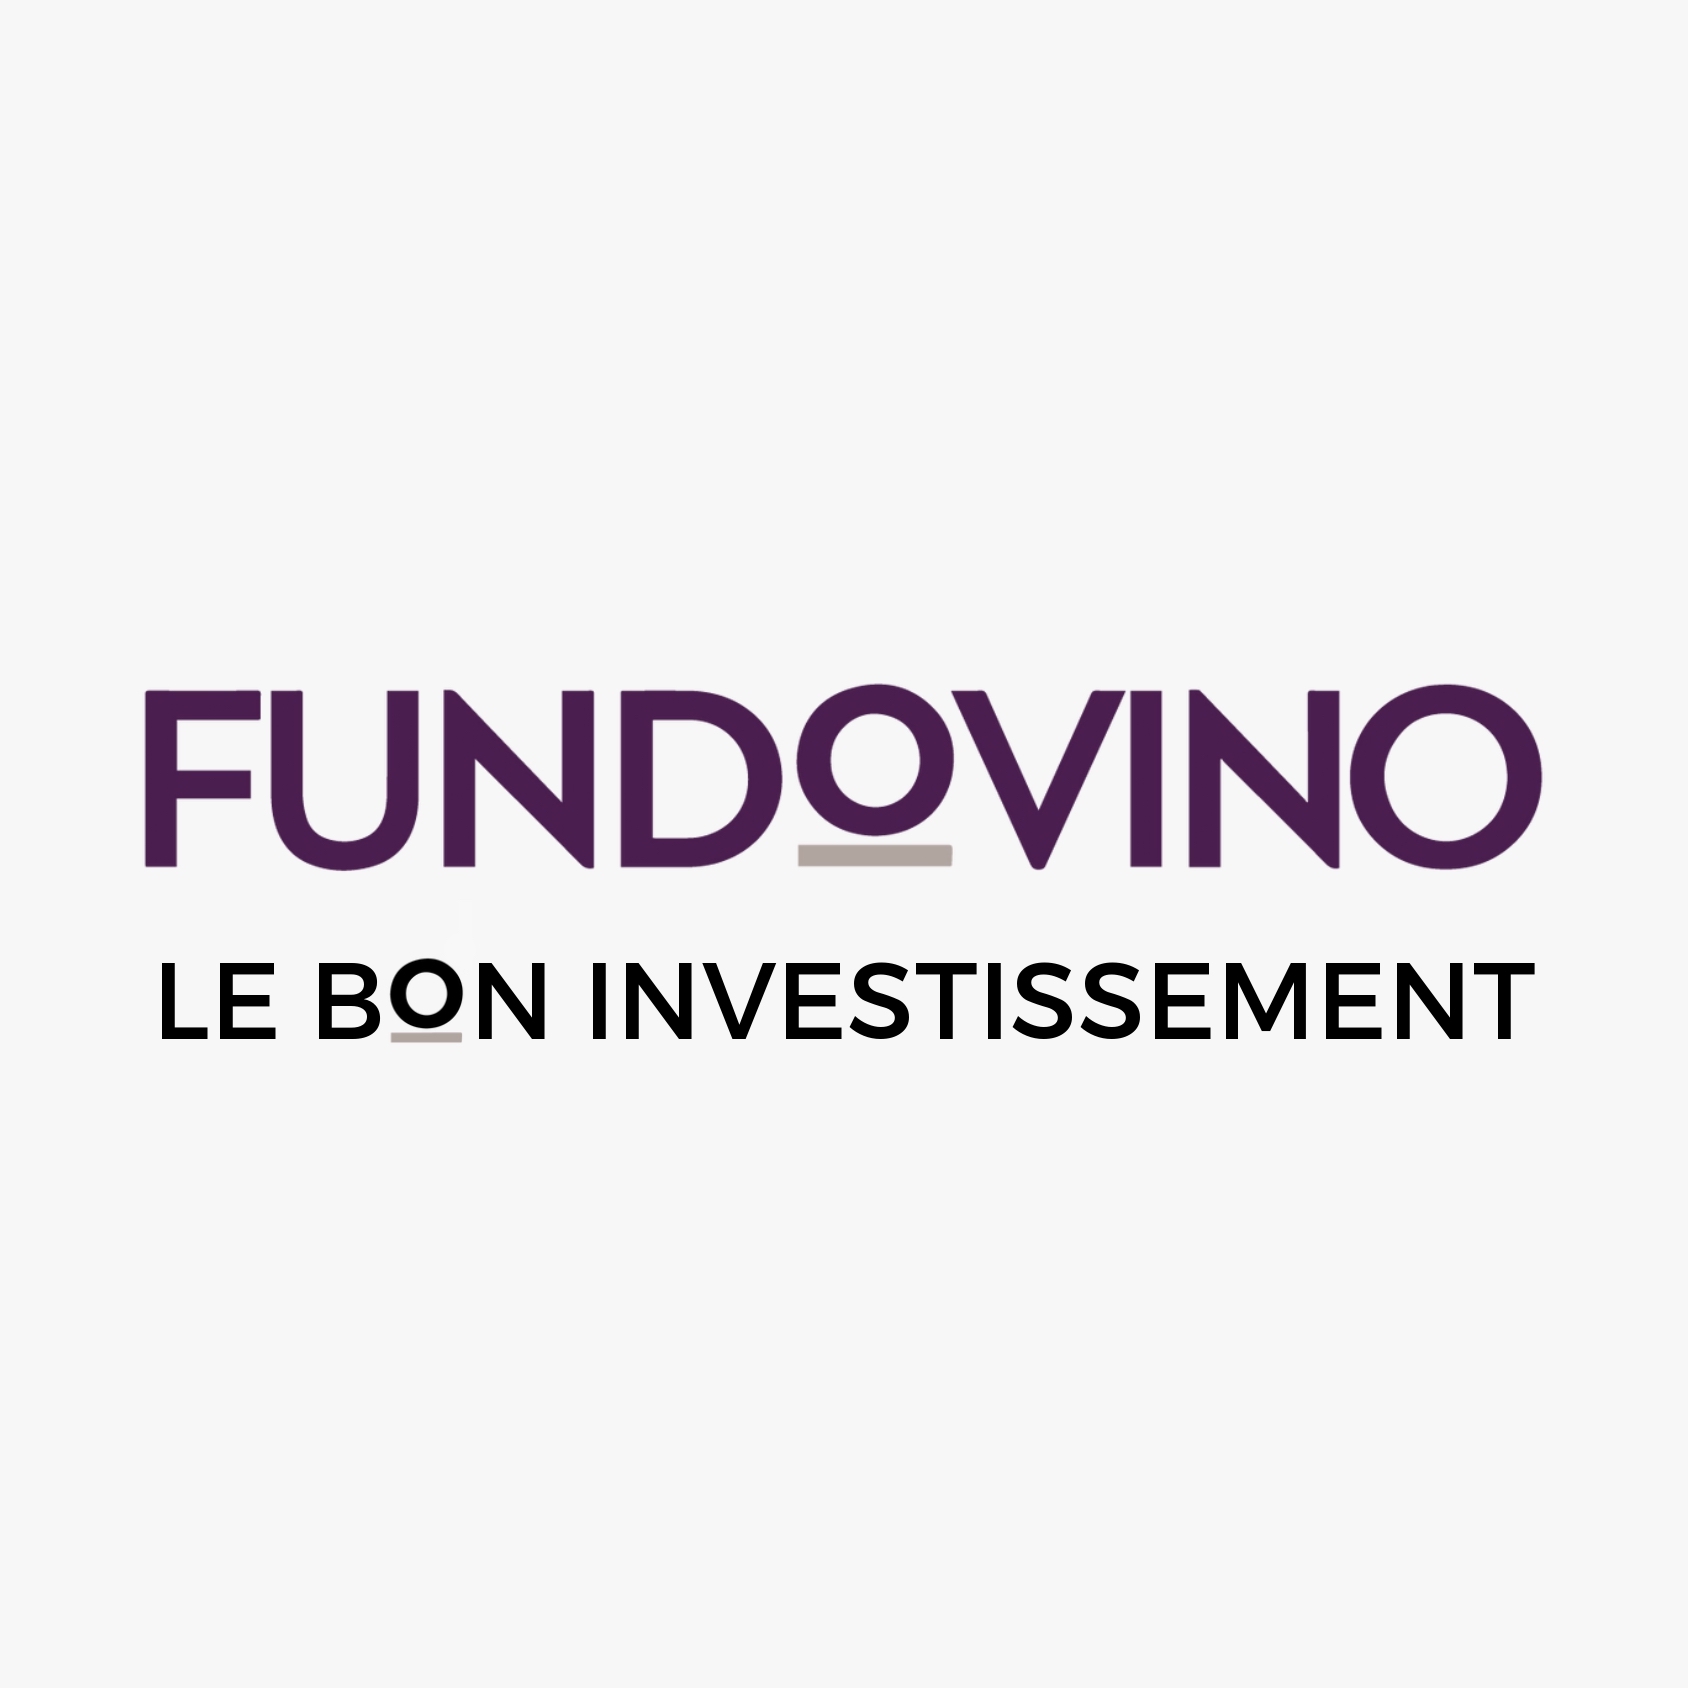 Fudovino - Le bon investissement